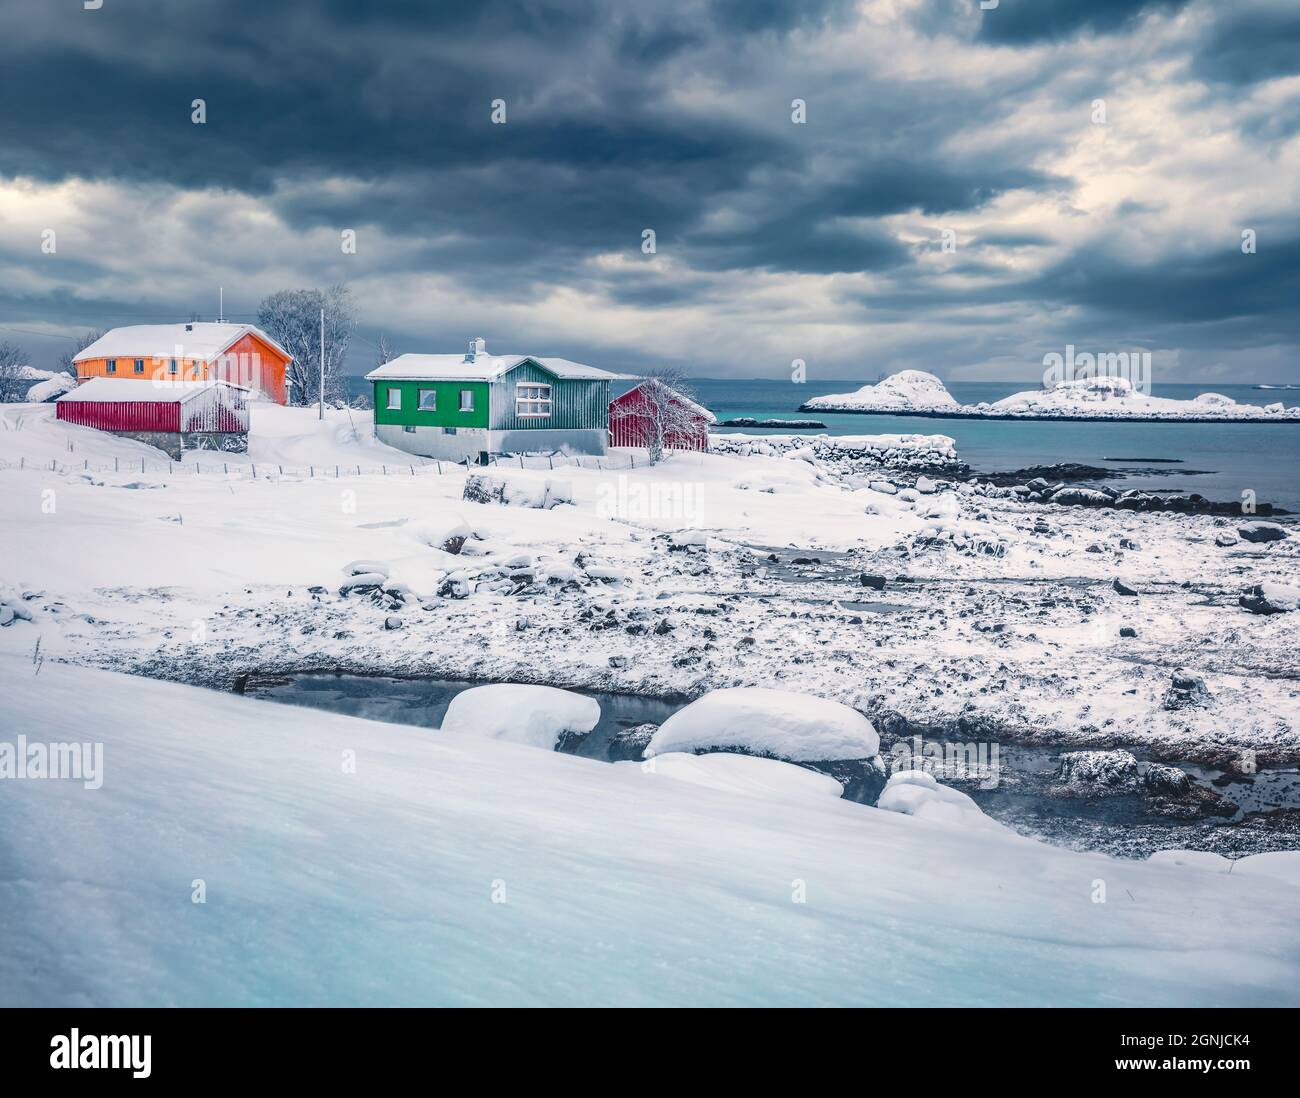 Dramatische Winterszene des Fischerdorfes Justad auf der Insel Vestvavoy. Bunte Holzhäuser auf den Lofoten-Inseln, traditionelle norwegische Architektur. Tr Stockfoto